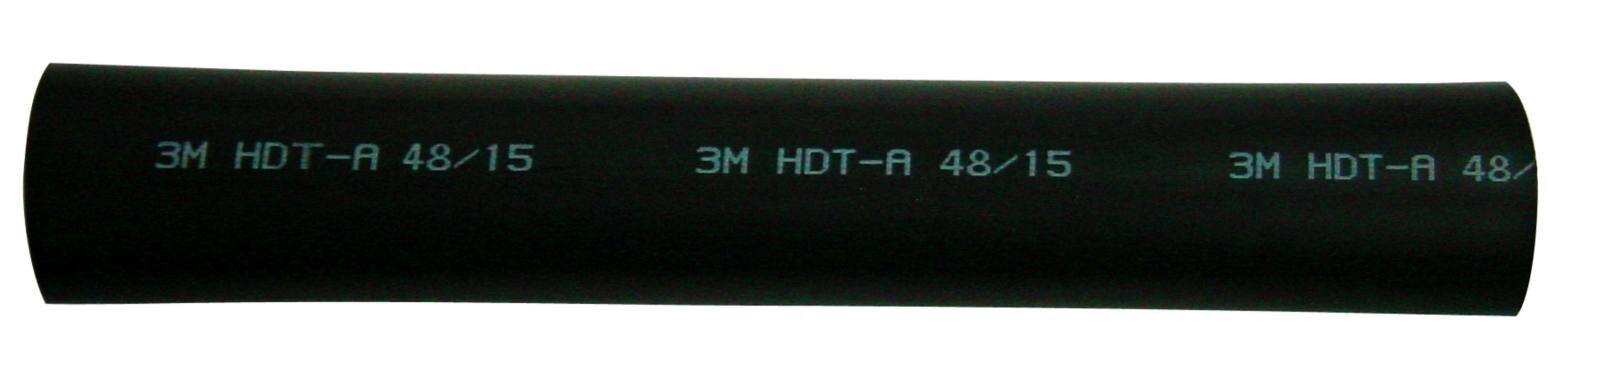 3M HDT-A Tubo termorretráctil de pared gruesa con adhesivo, negro, 12/3 mm, 1 m